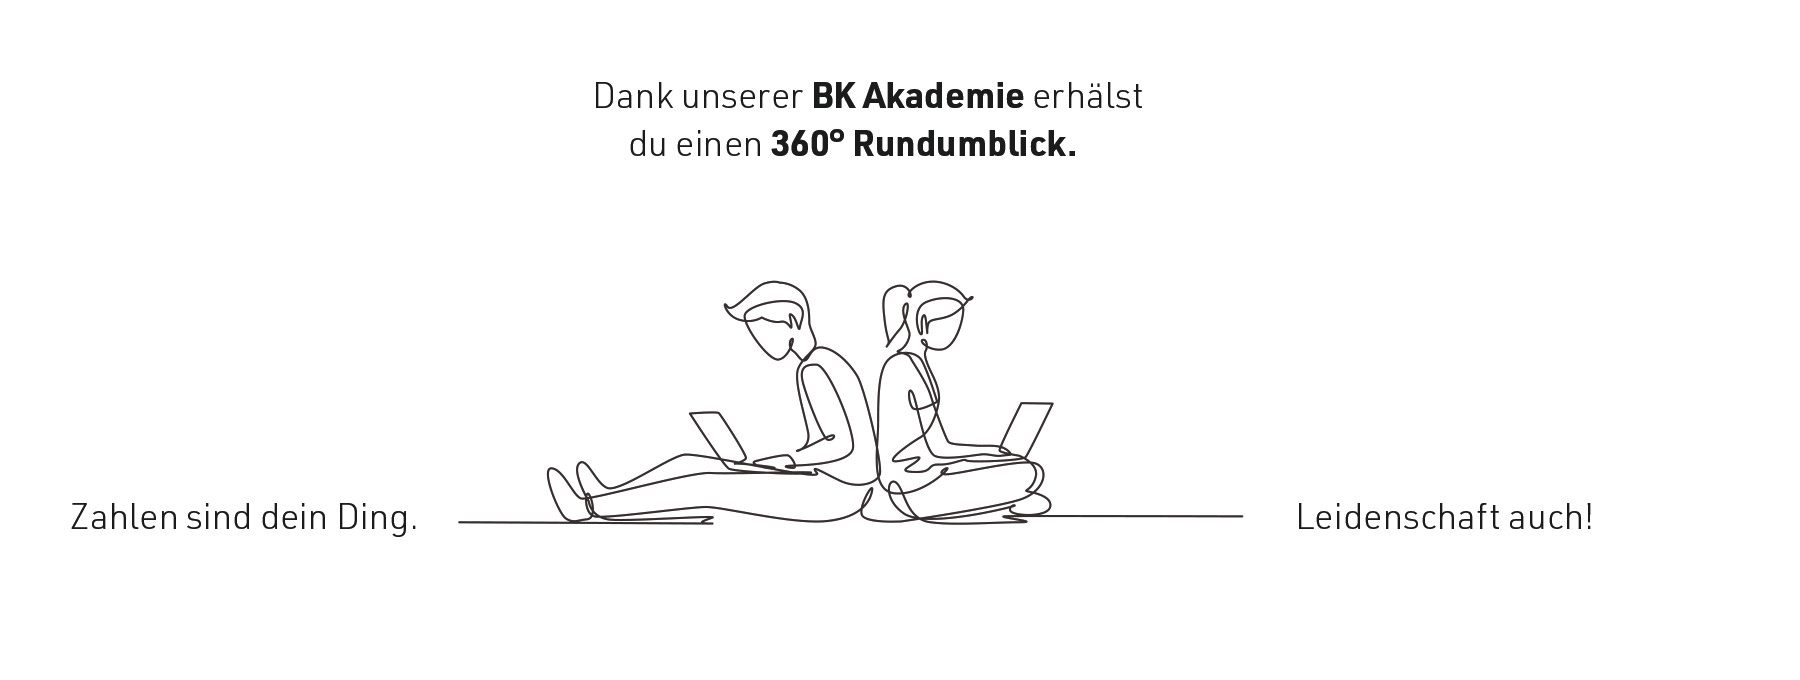 Baudermann Kulcke | Steuer- und Wirtschaftsberatung - BK Akademie